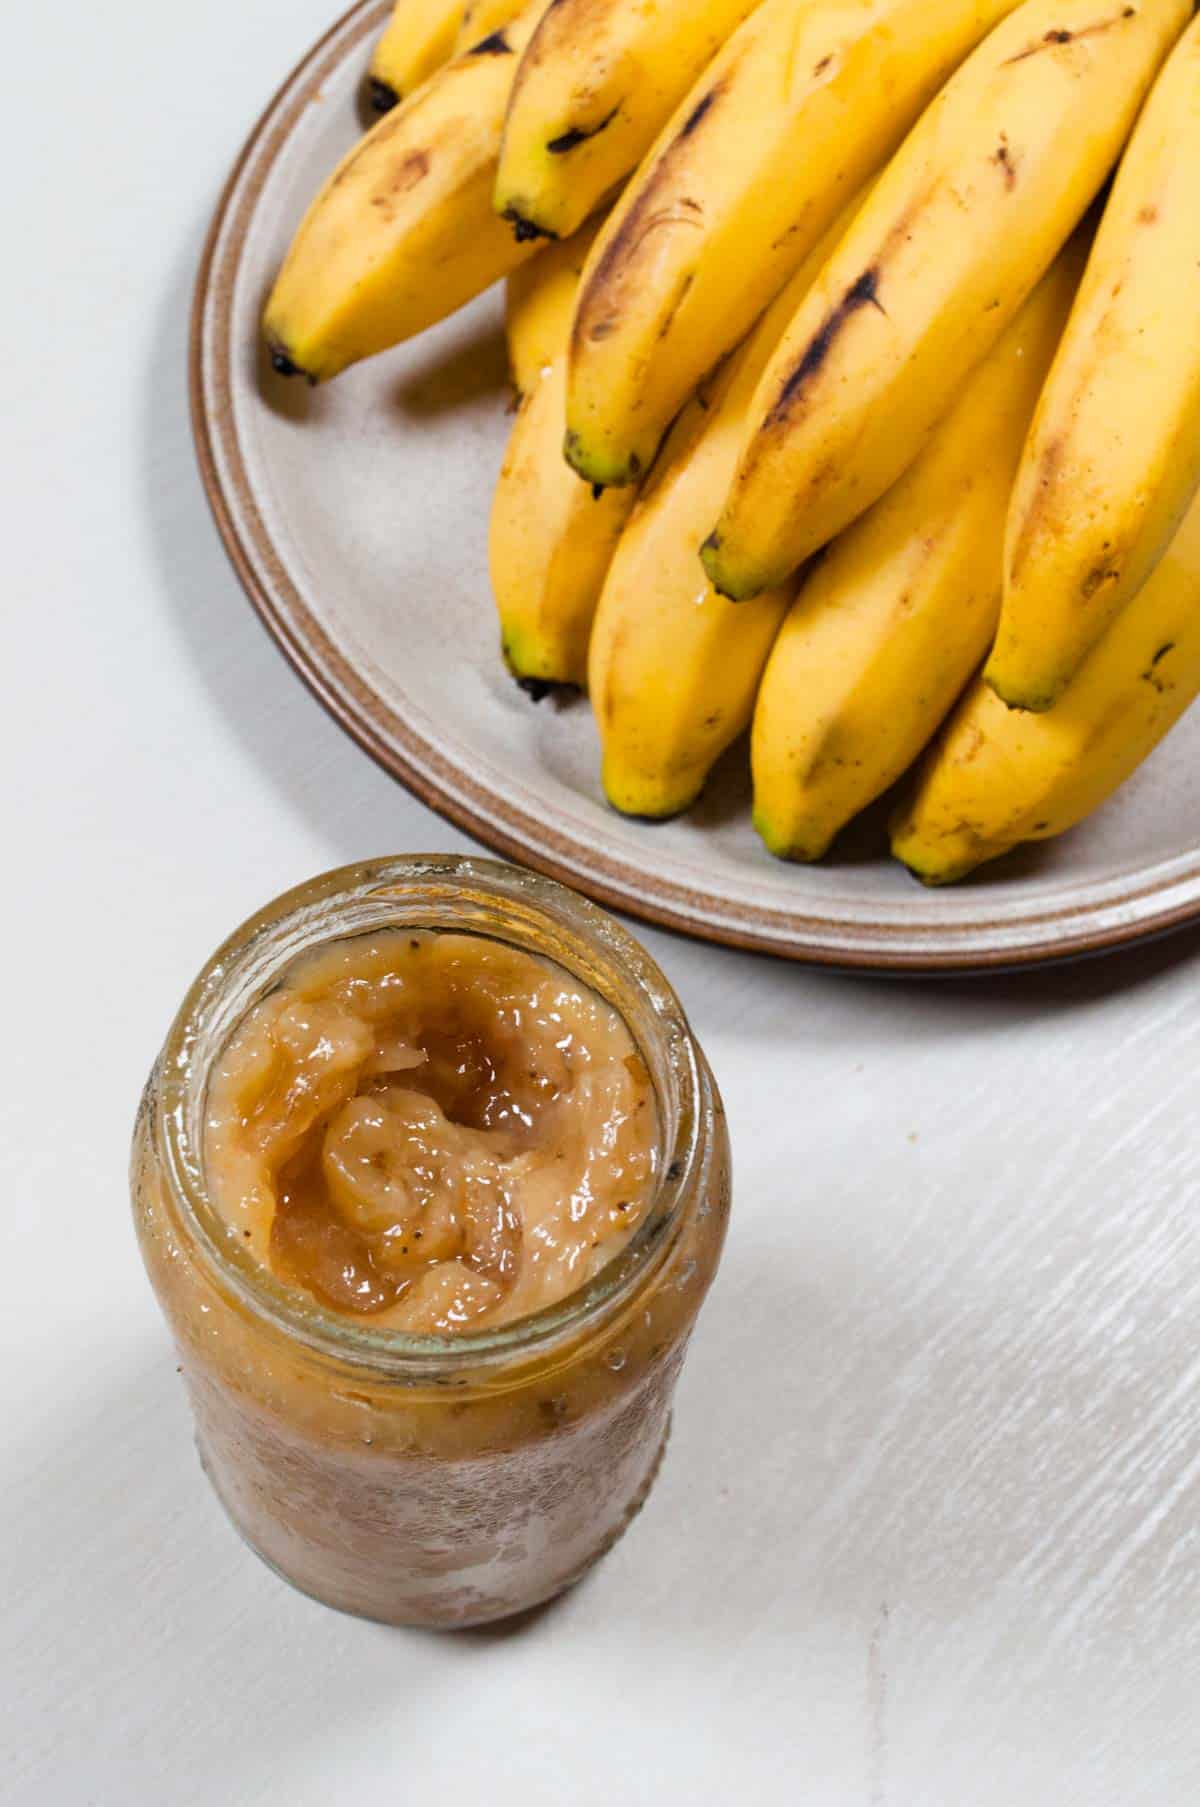 A close uo of jar of banana jam.